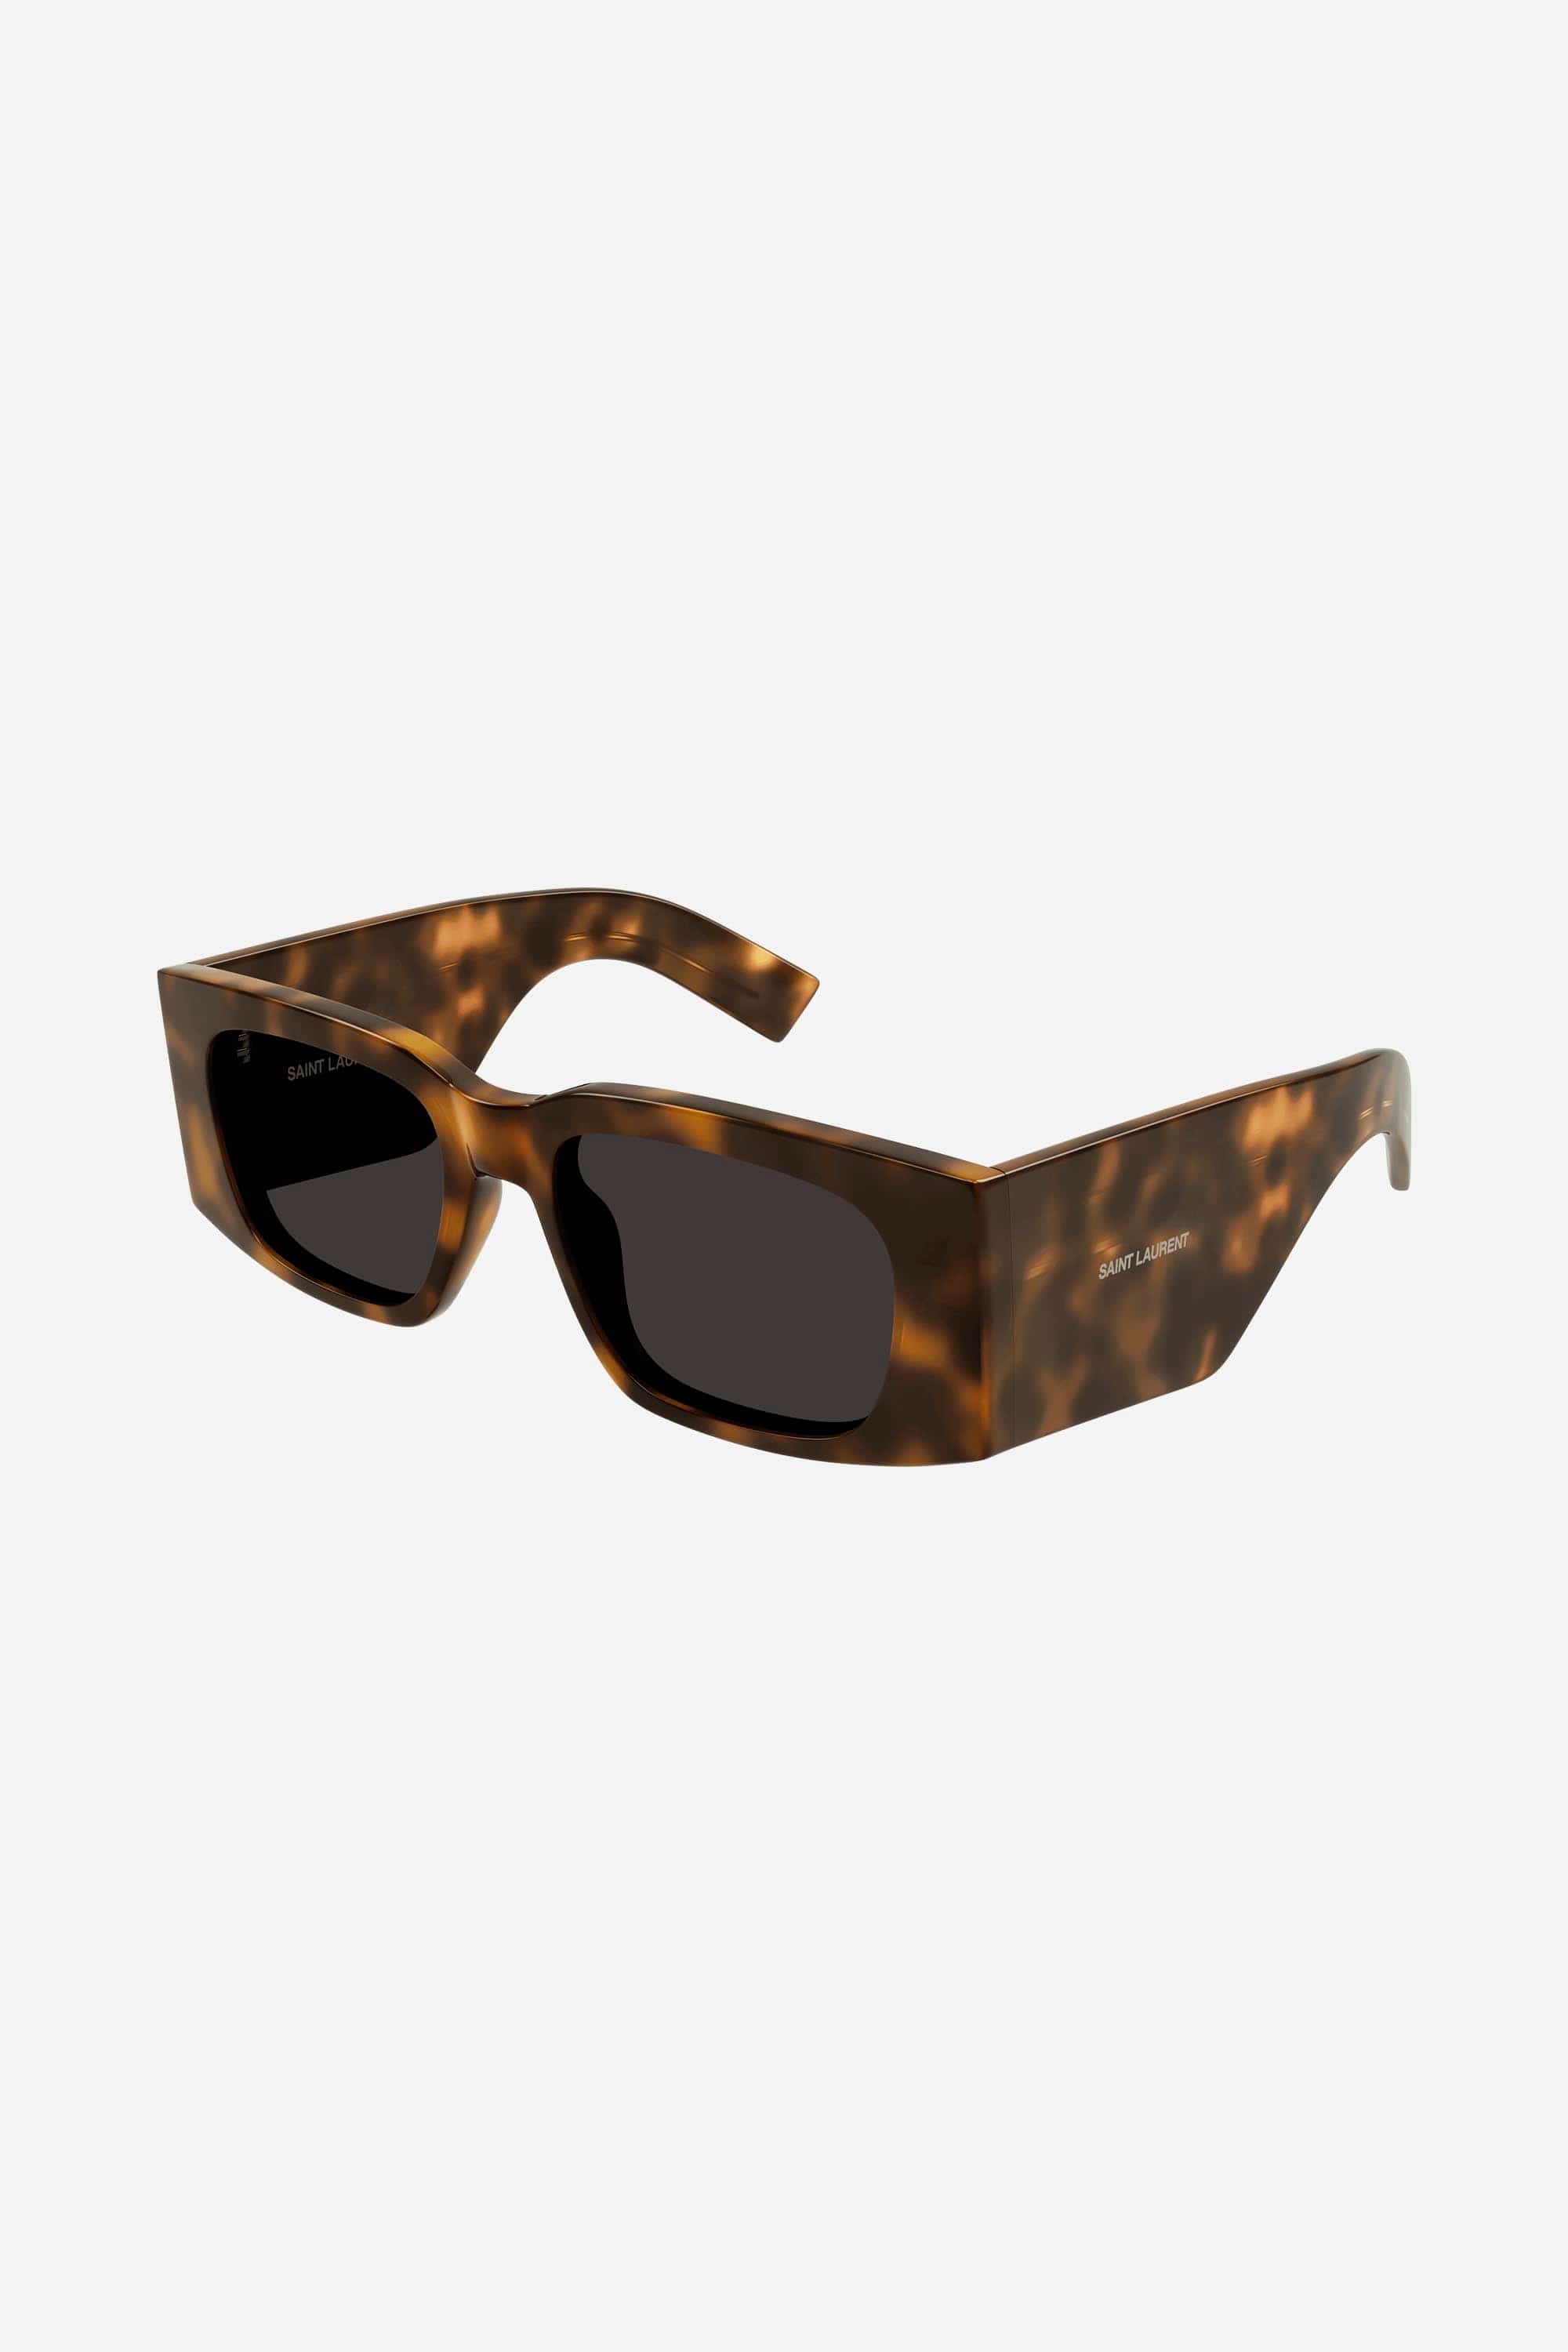 Saint Laurent acetate SL 654 havana sunglasses - Eyewear Club